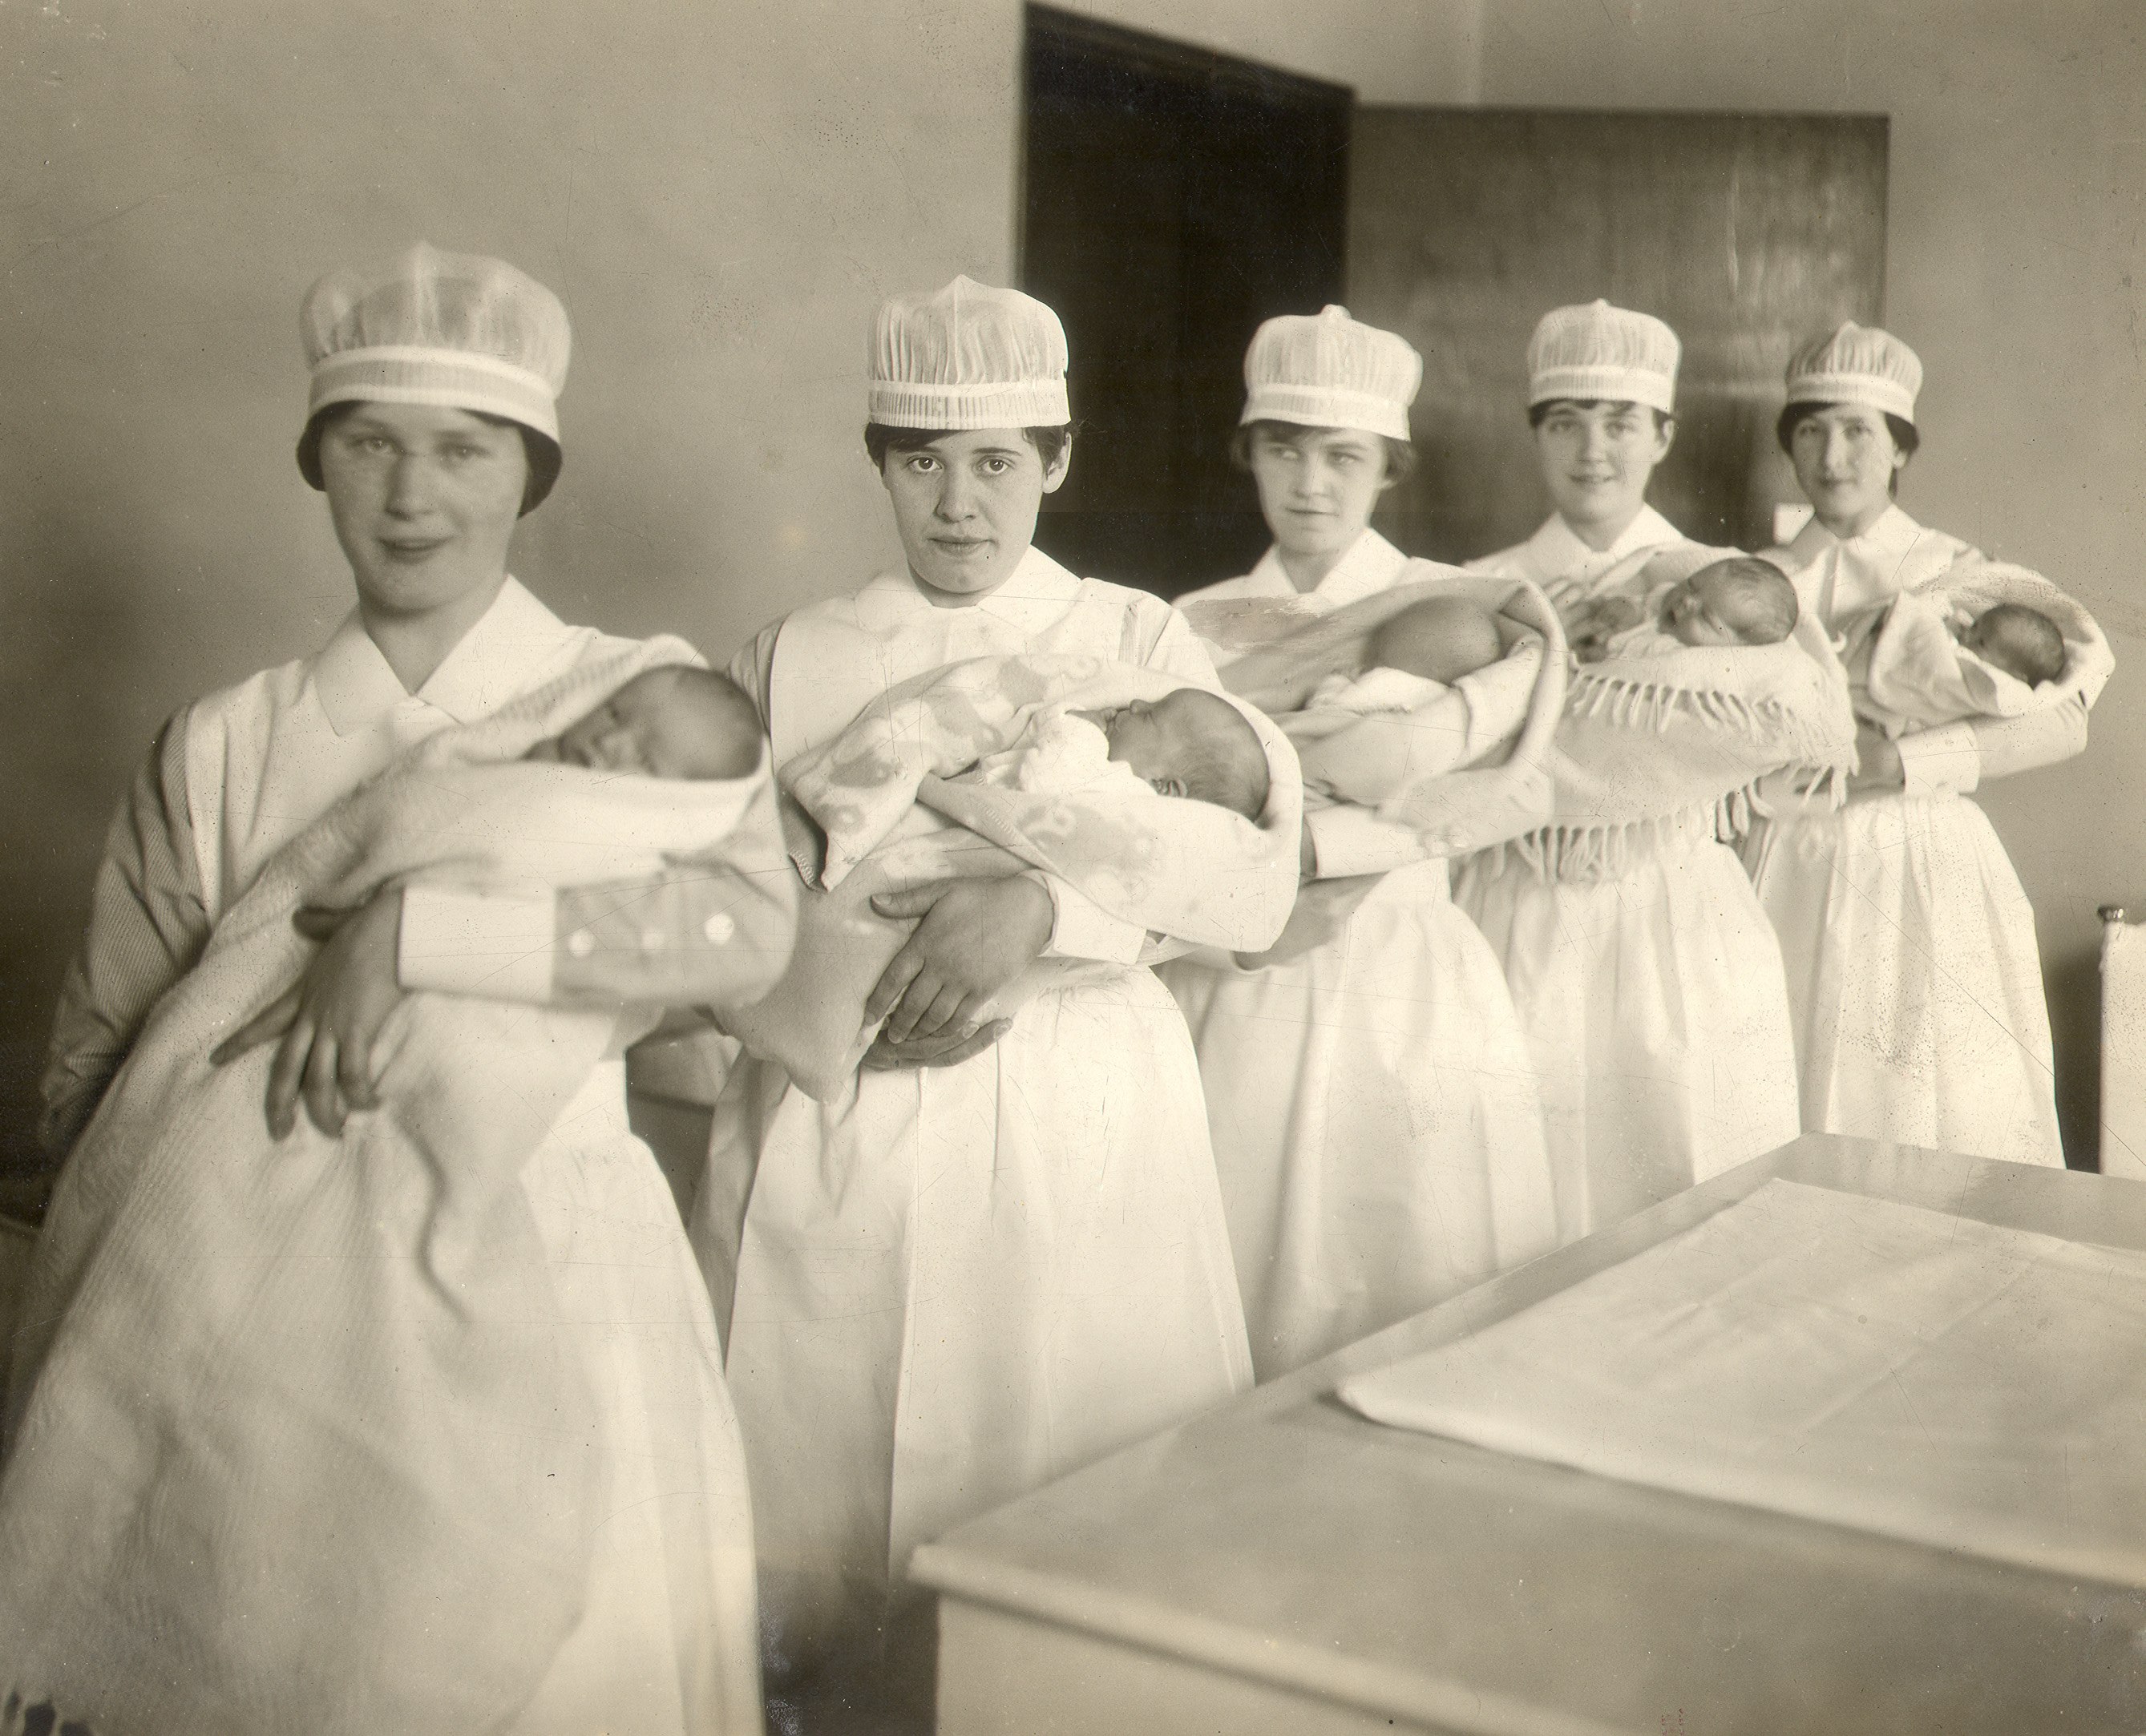 Cinq jeunes femmes tiennent des bébés emmitoufflés et posent pour la photo. Elles portent des coiffes d’infirmière.